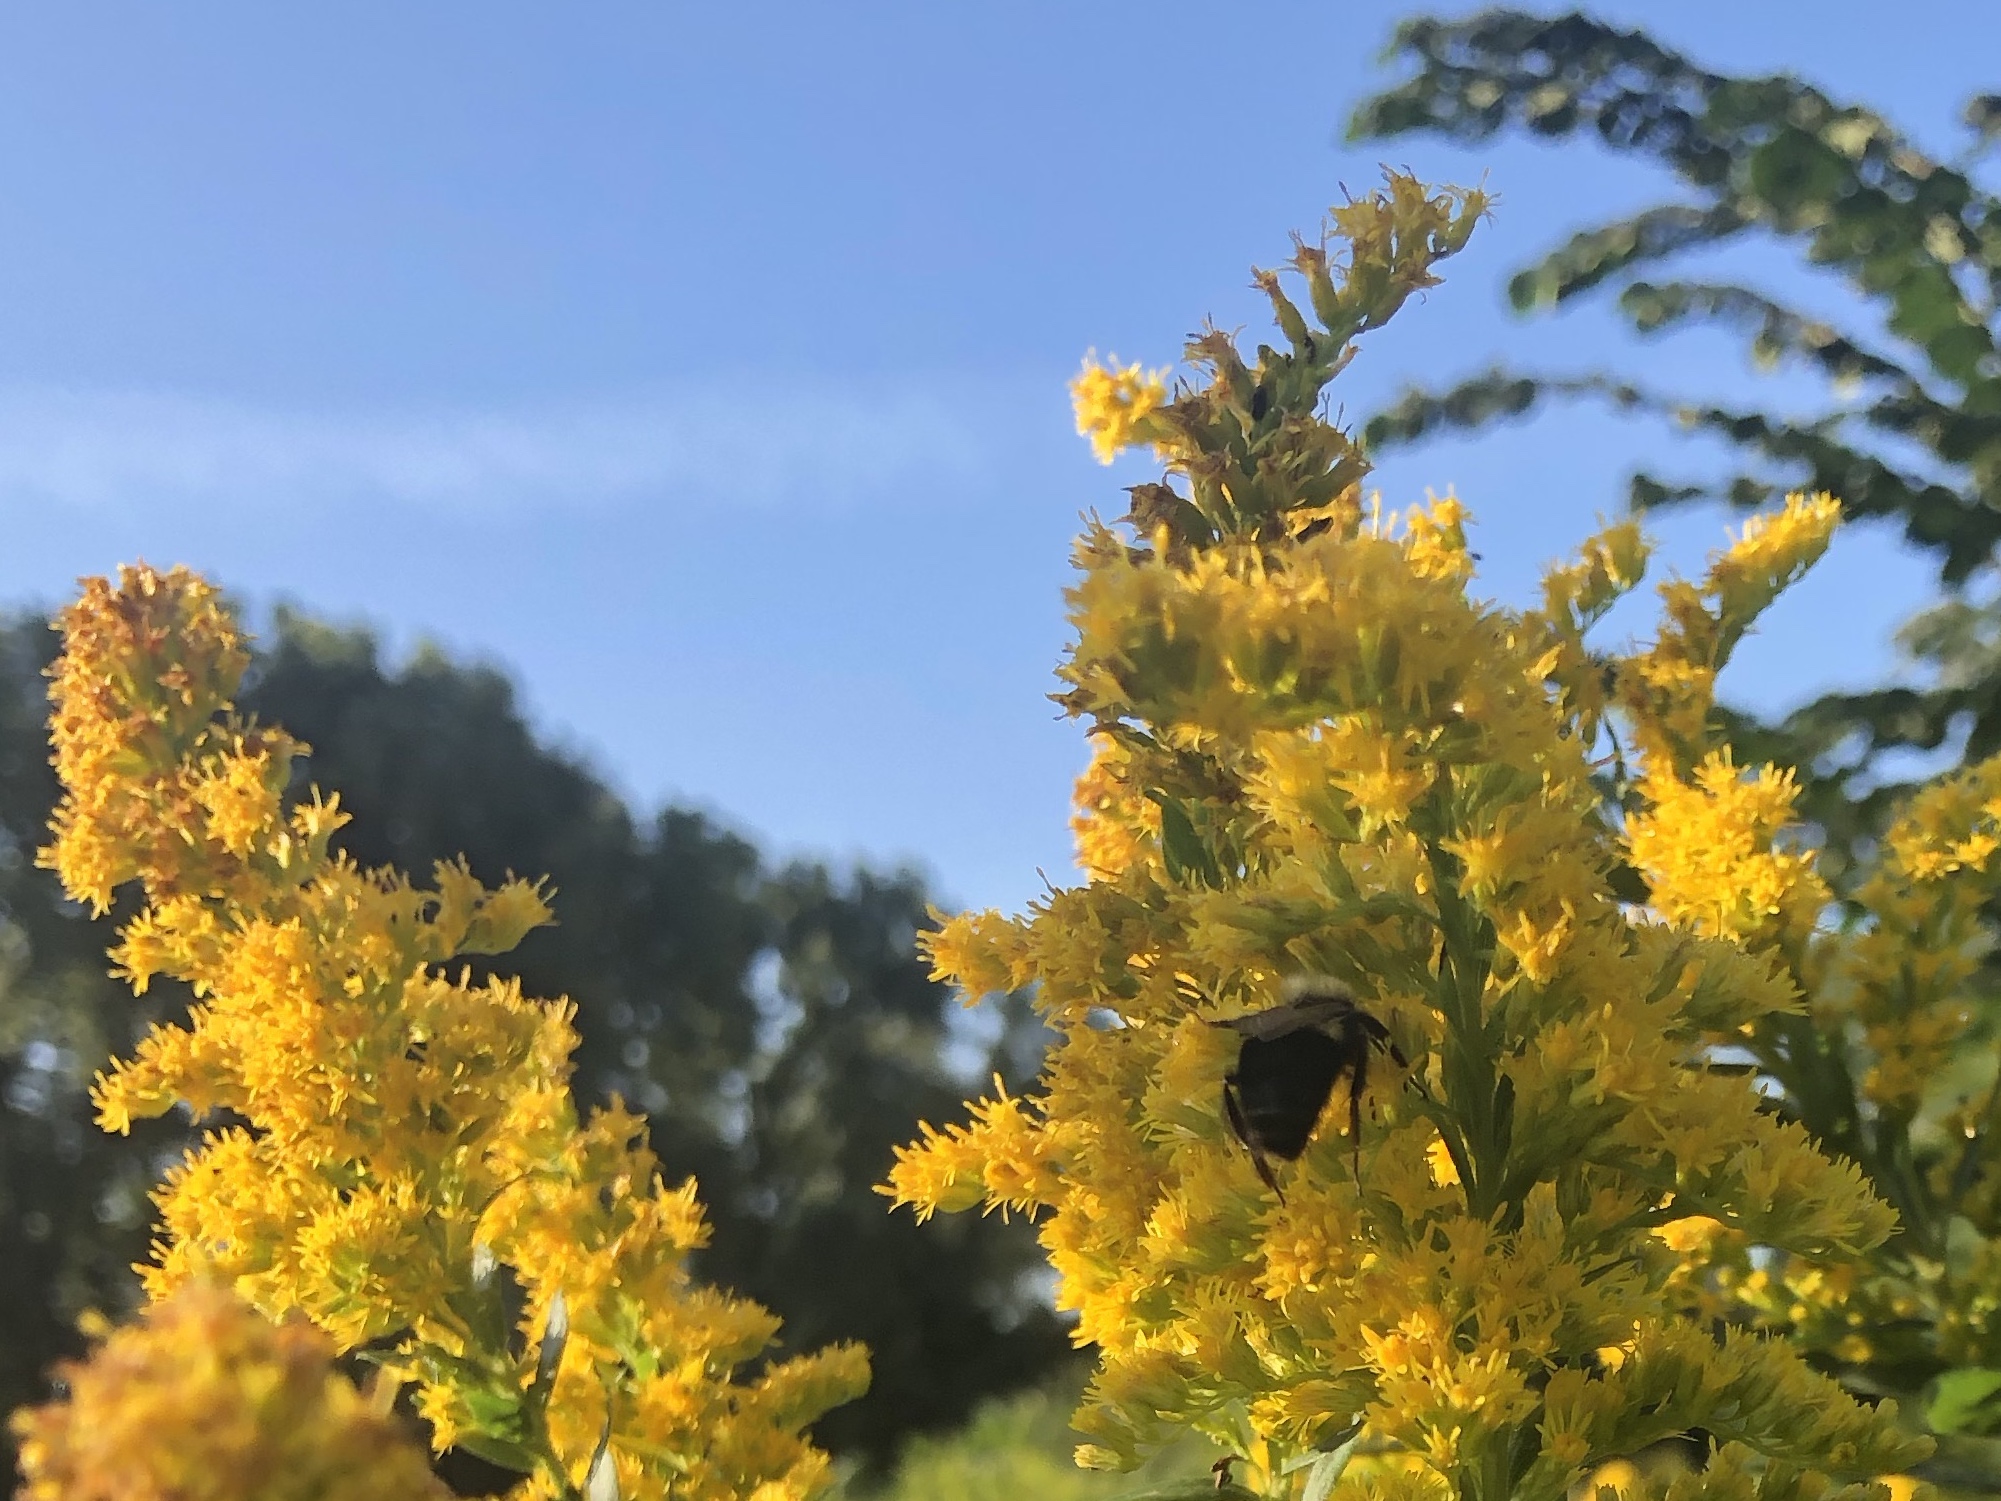 Goldenrod photo taken September 4, 2018 in UW Arboretum.